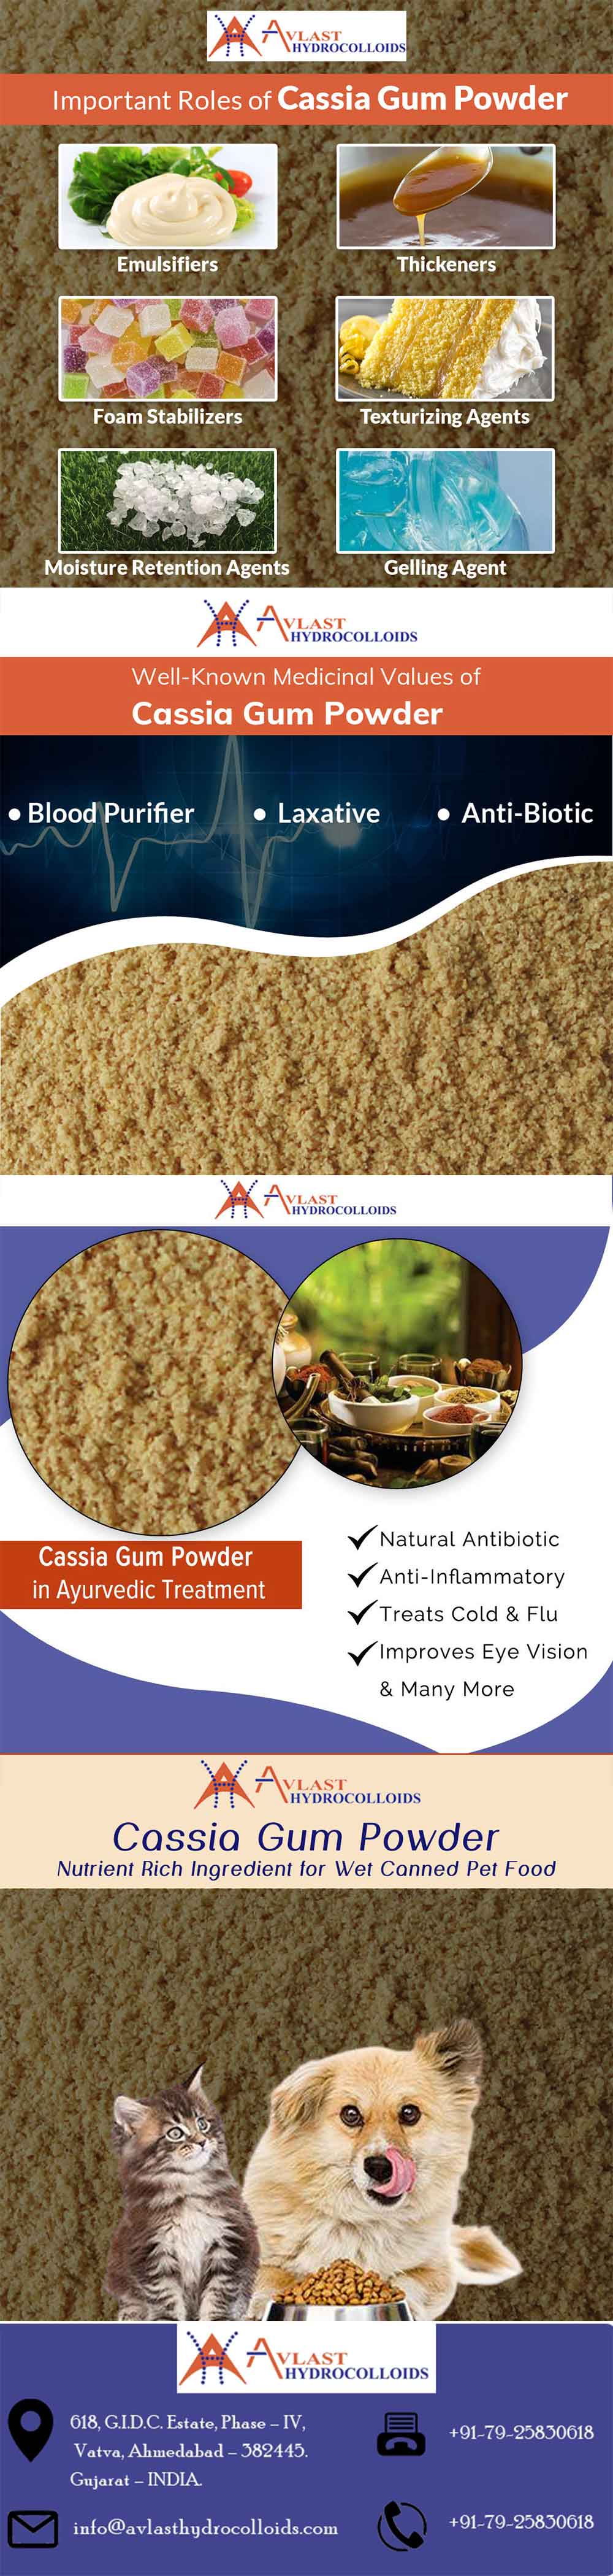 Important Roles of Cassia Gum Powder